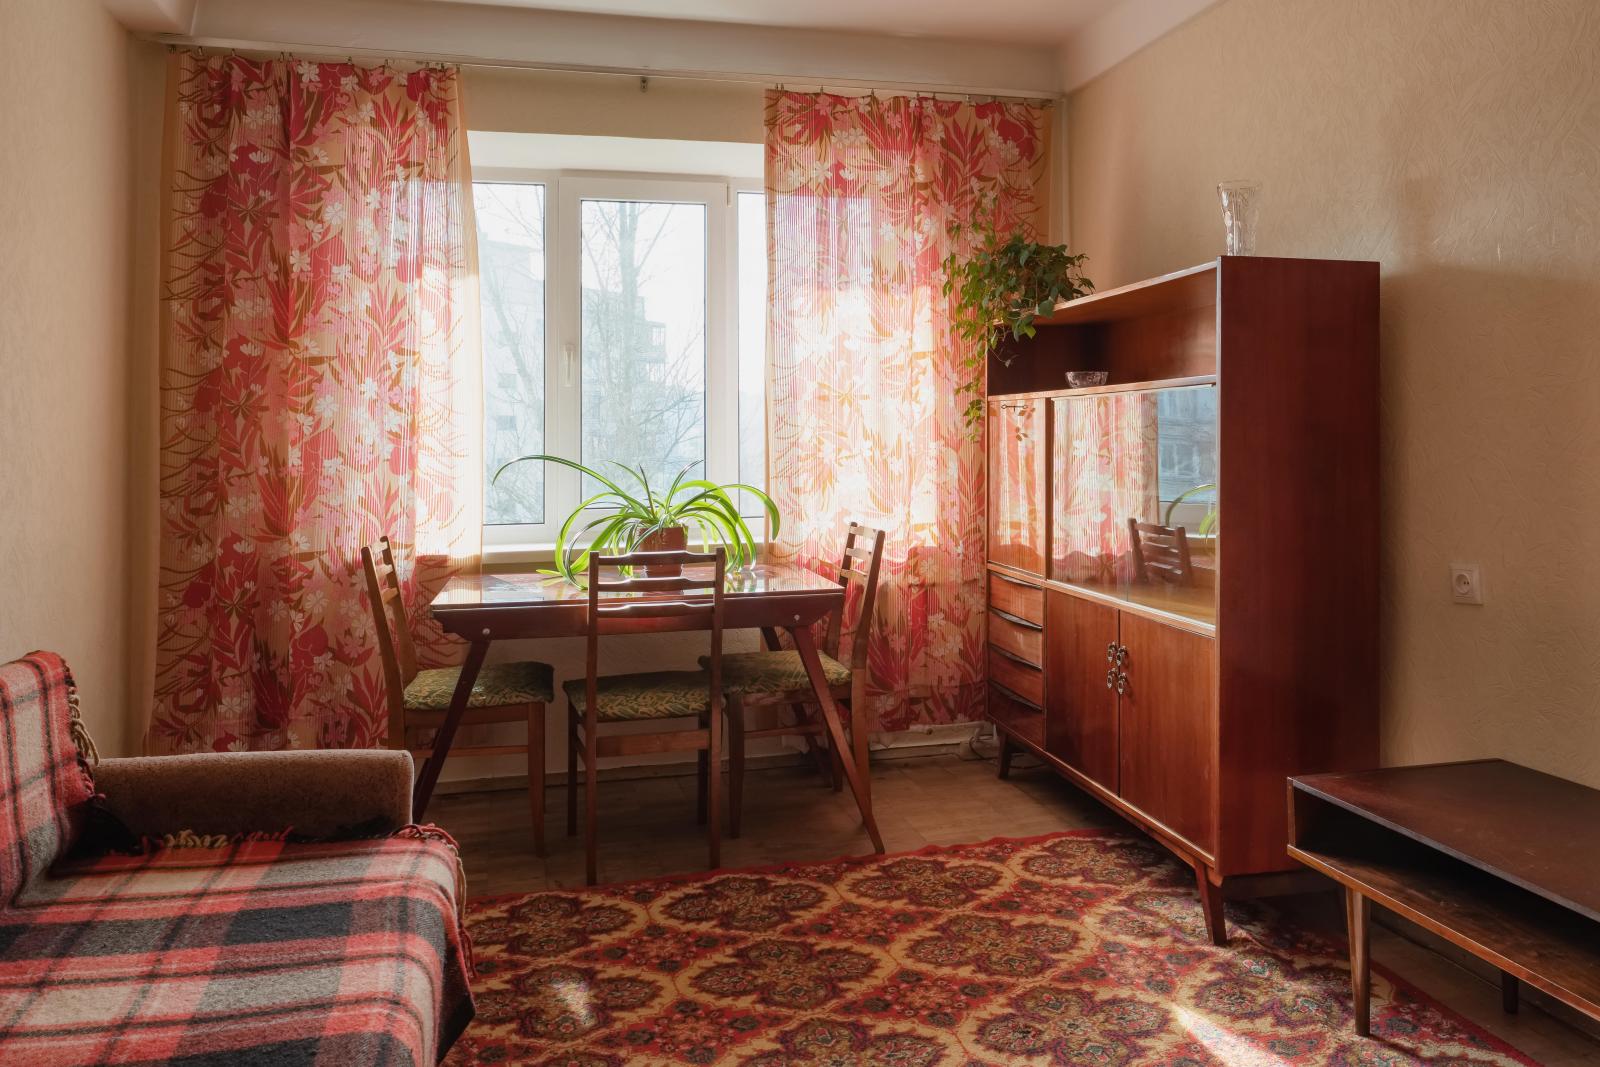 Старая 4 комнатная квартира. Советская квартира. Советский интерьер. Квартира в Советском стиле. Старая Советская квартира.